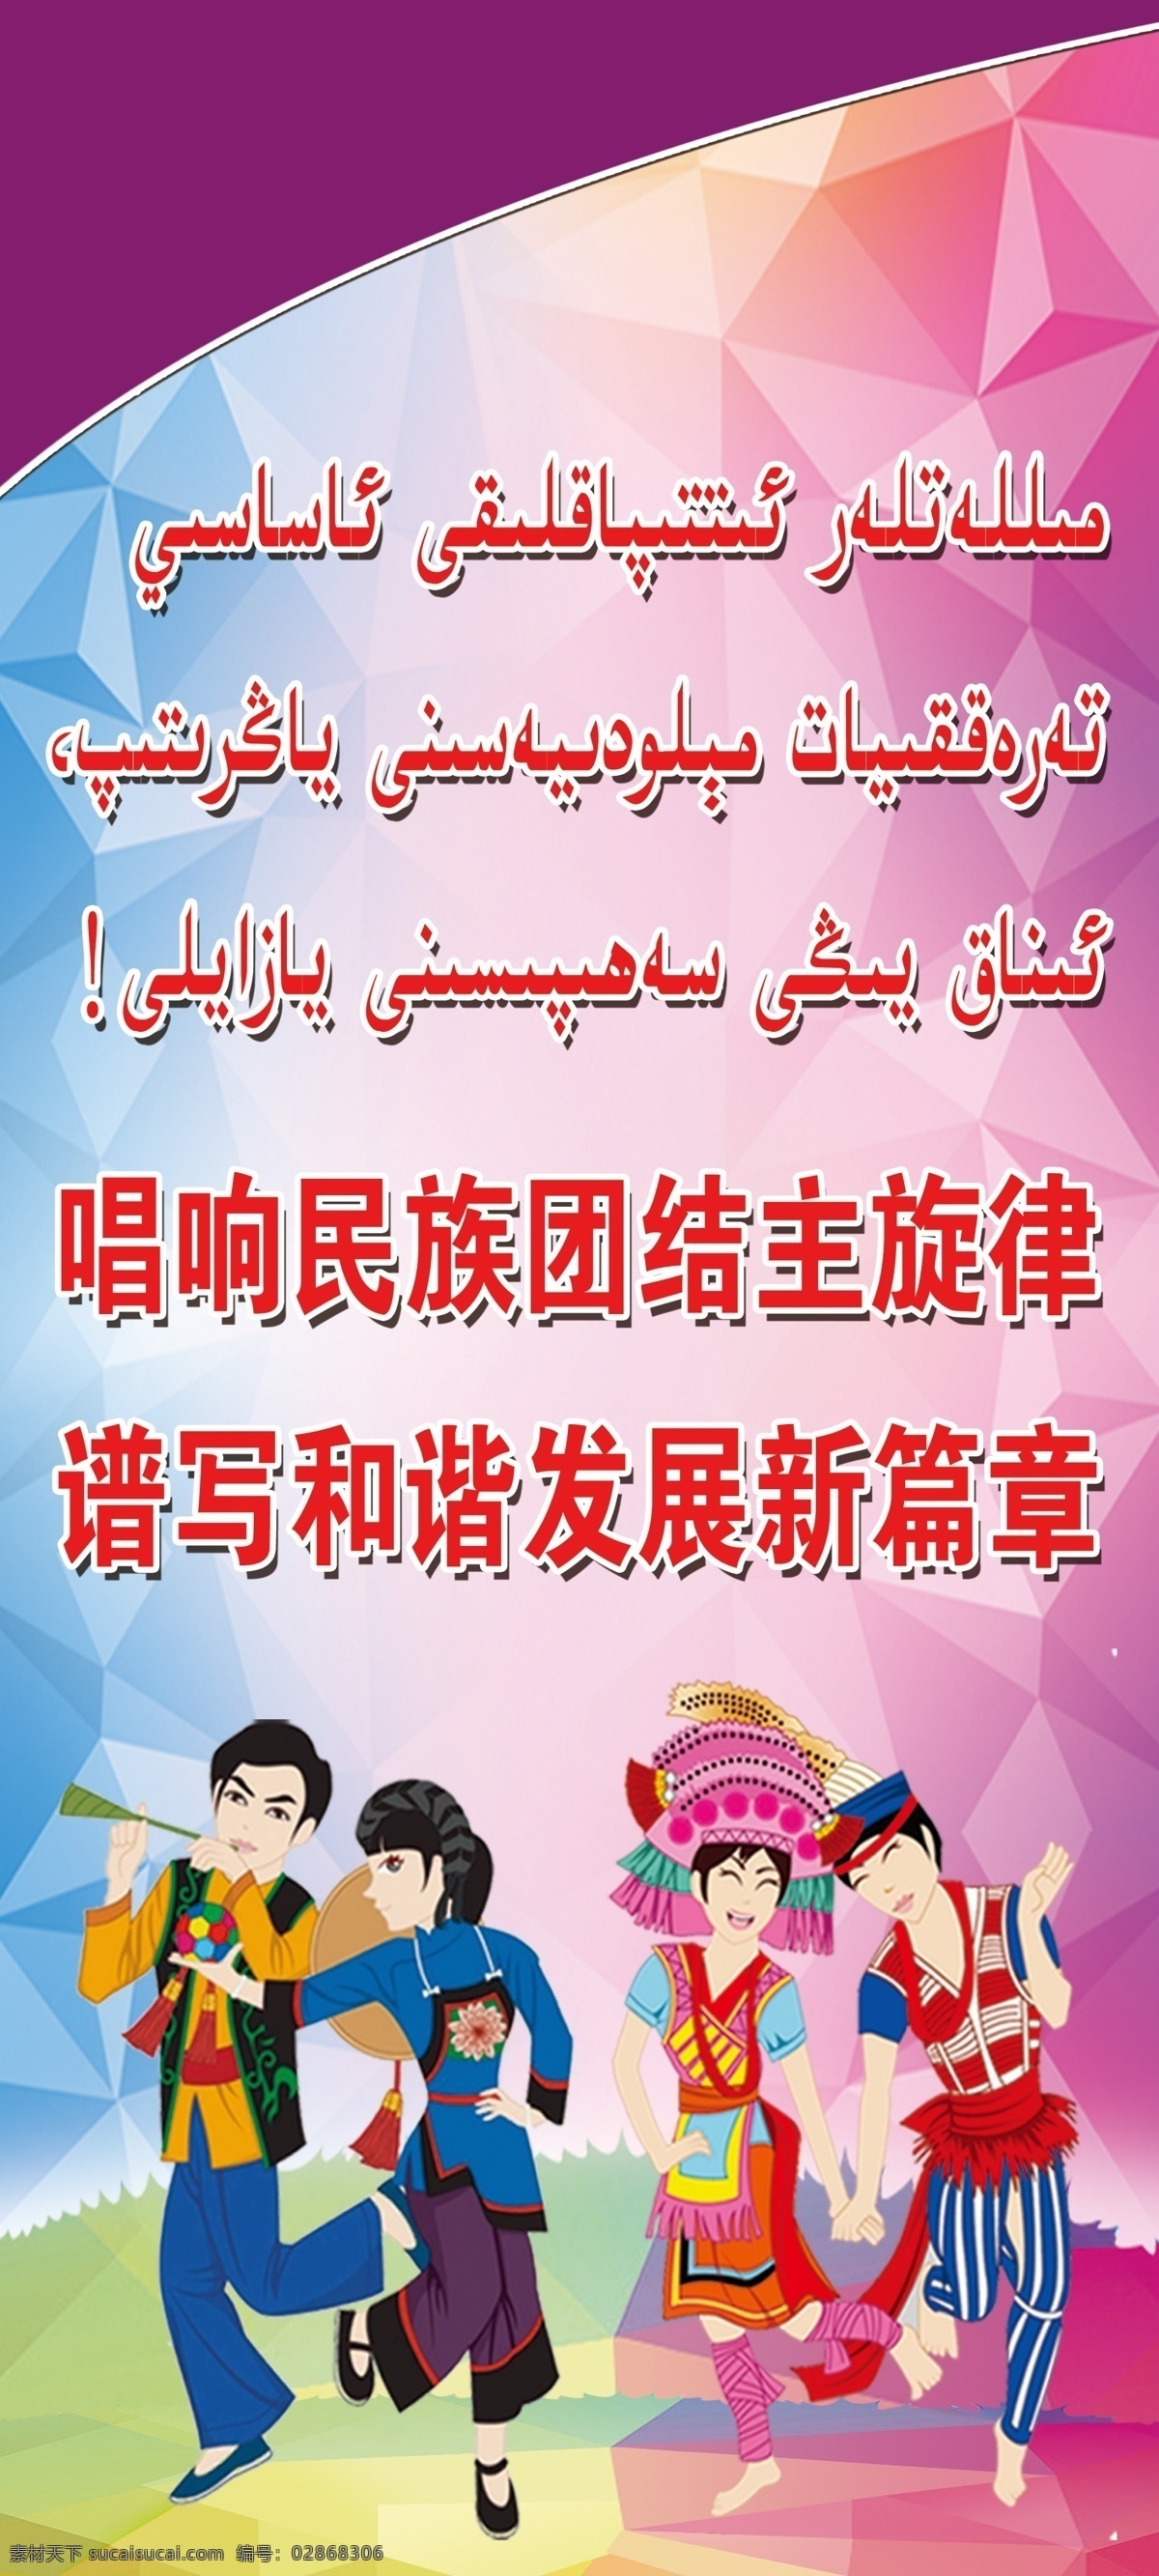 唱响民族团结 主旋律 谱写和谐发 展新篇章 卡通 字体 维吾尔文 维文 女孩 分层